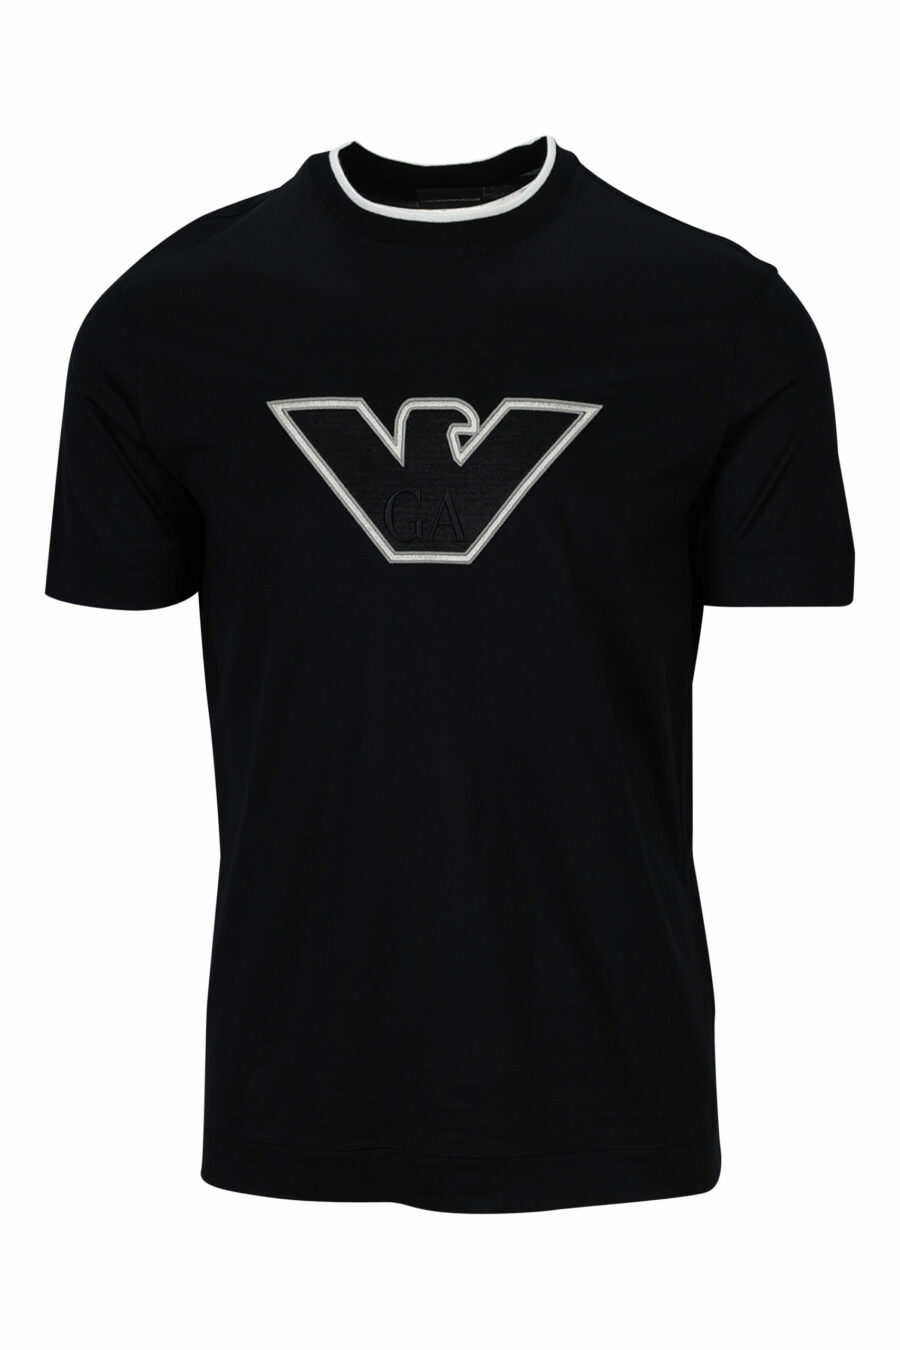 T-shirt preta com maxilogo de águia branca delineado - 8057767554040 à escala